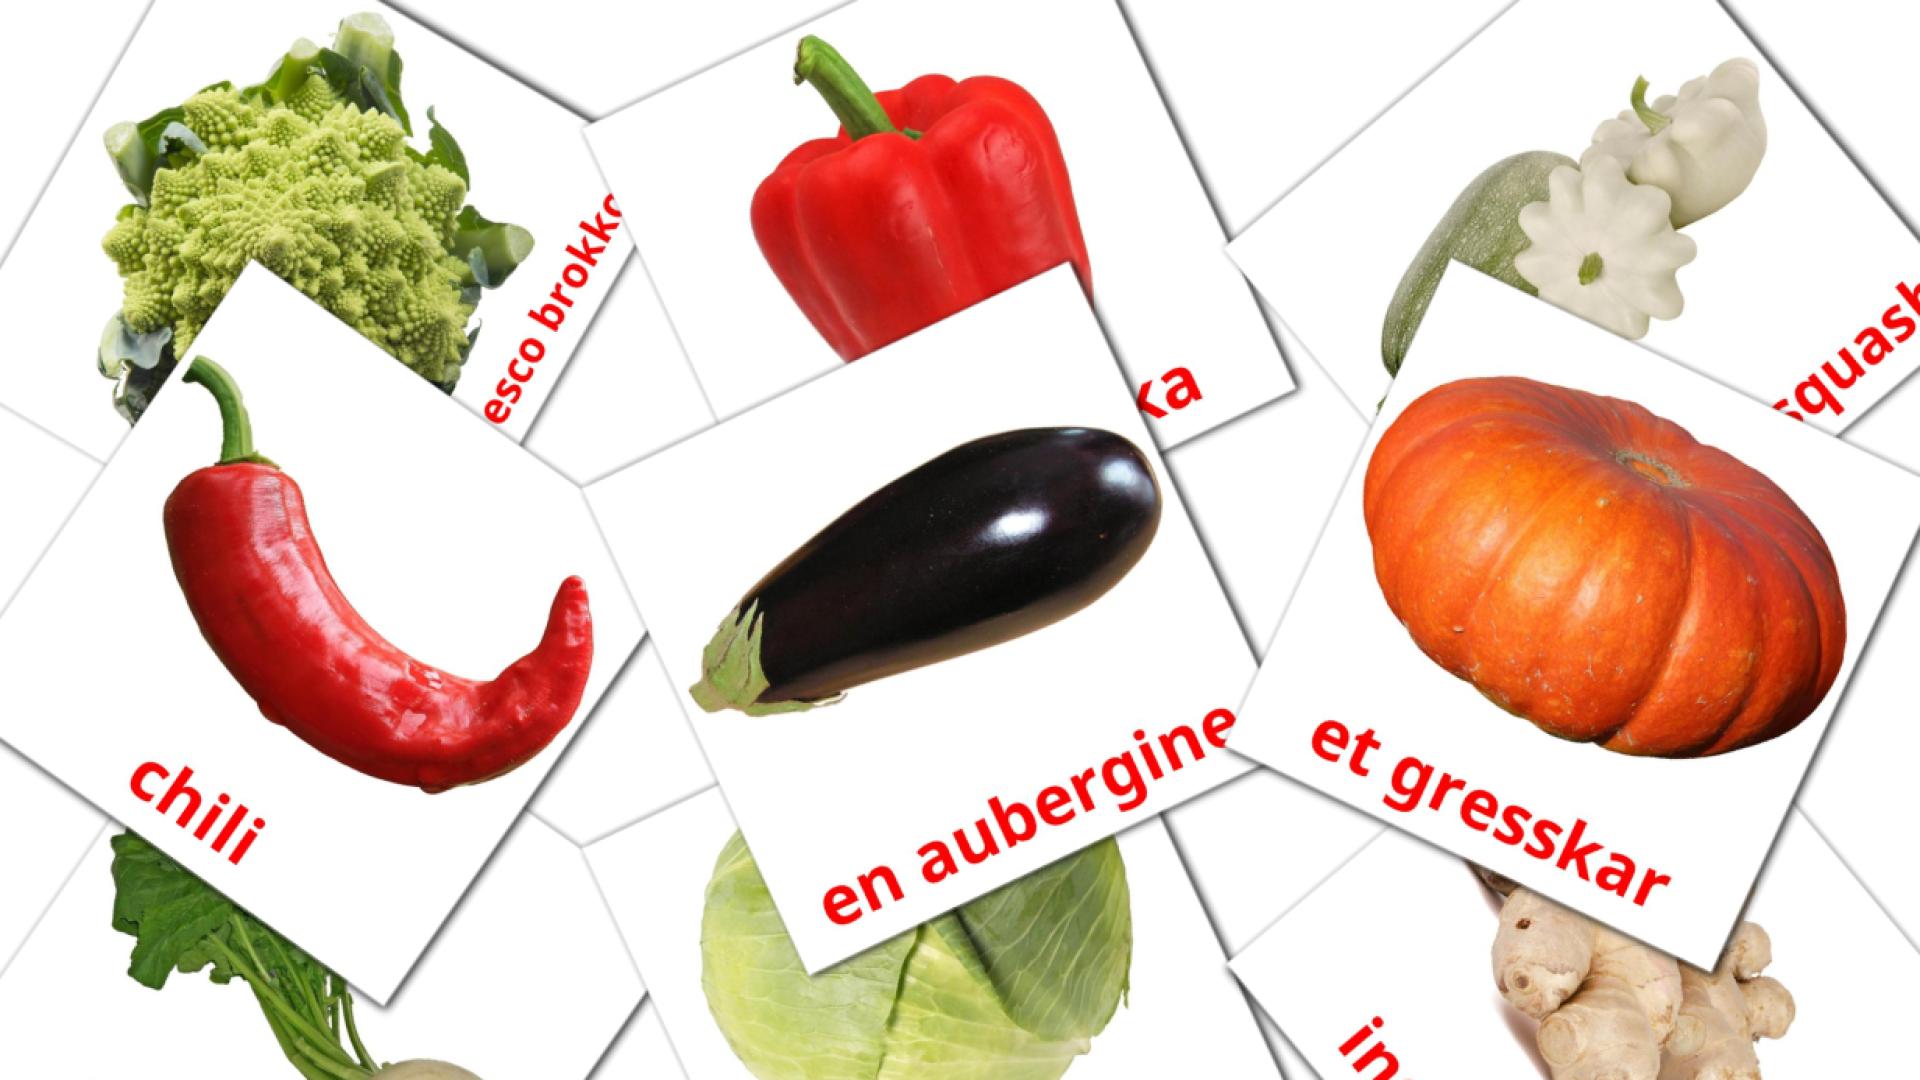 29 Grønnsaker flashcards